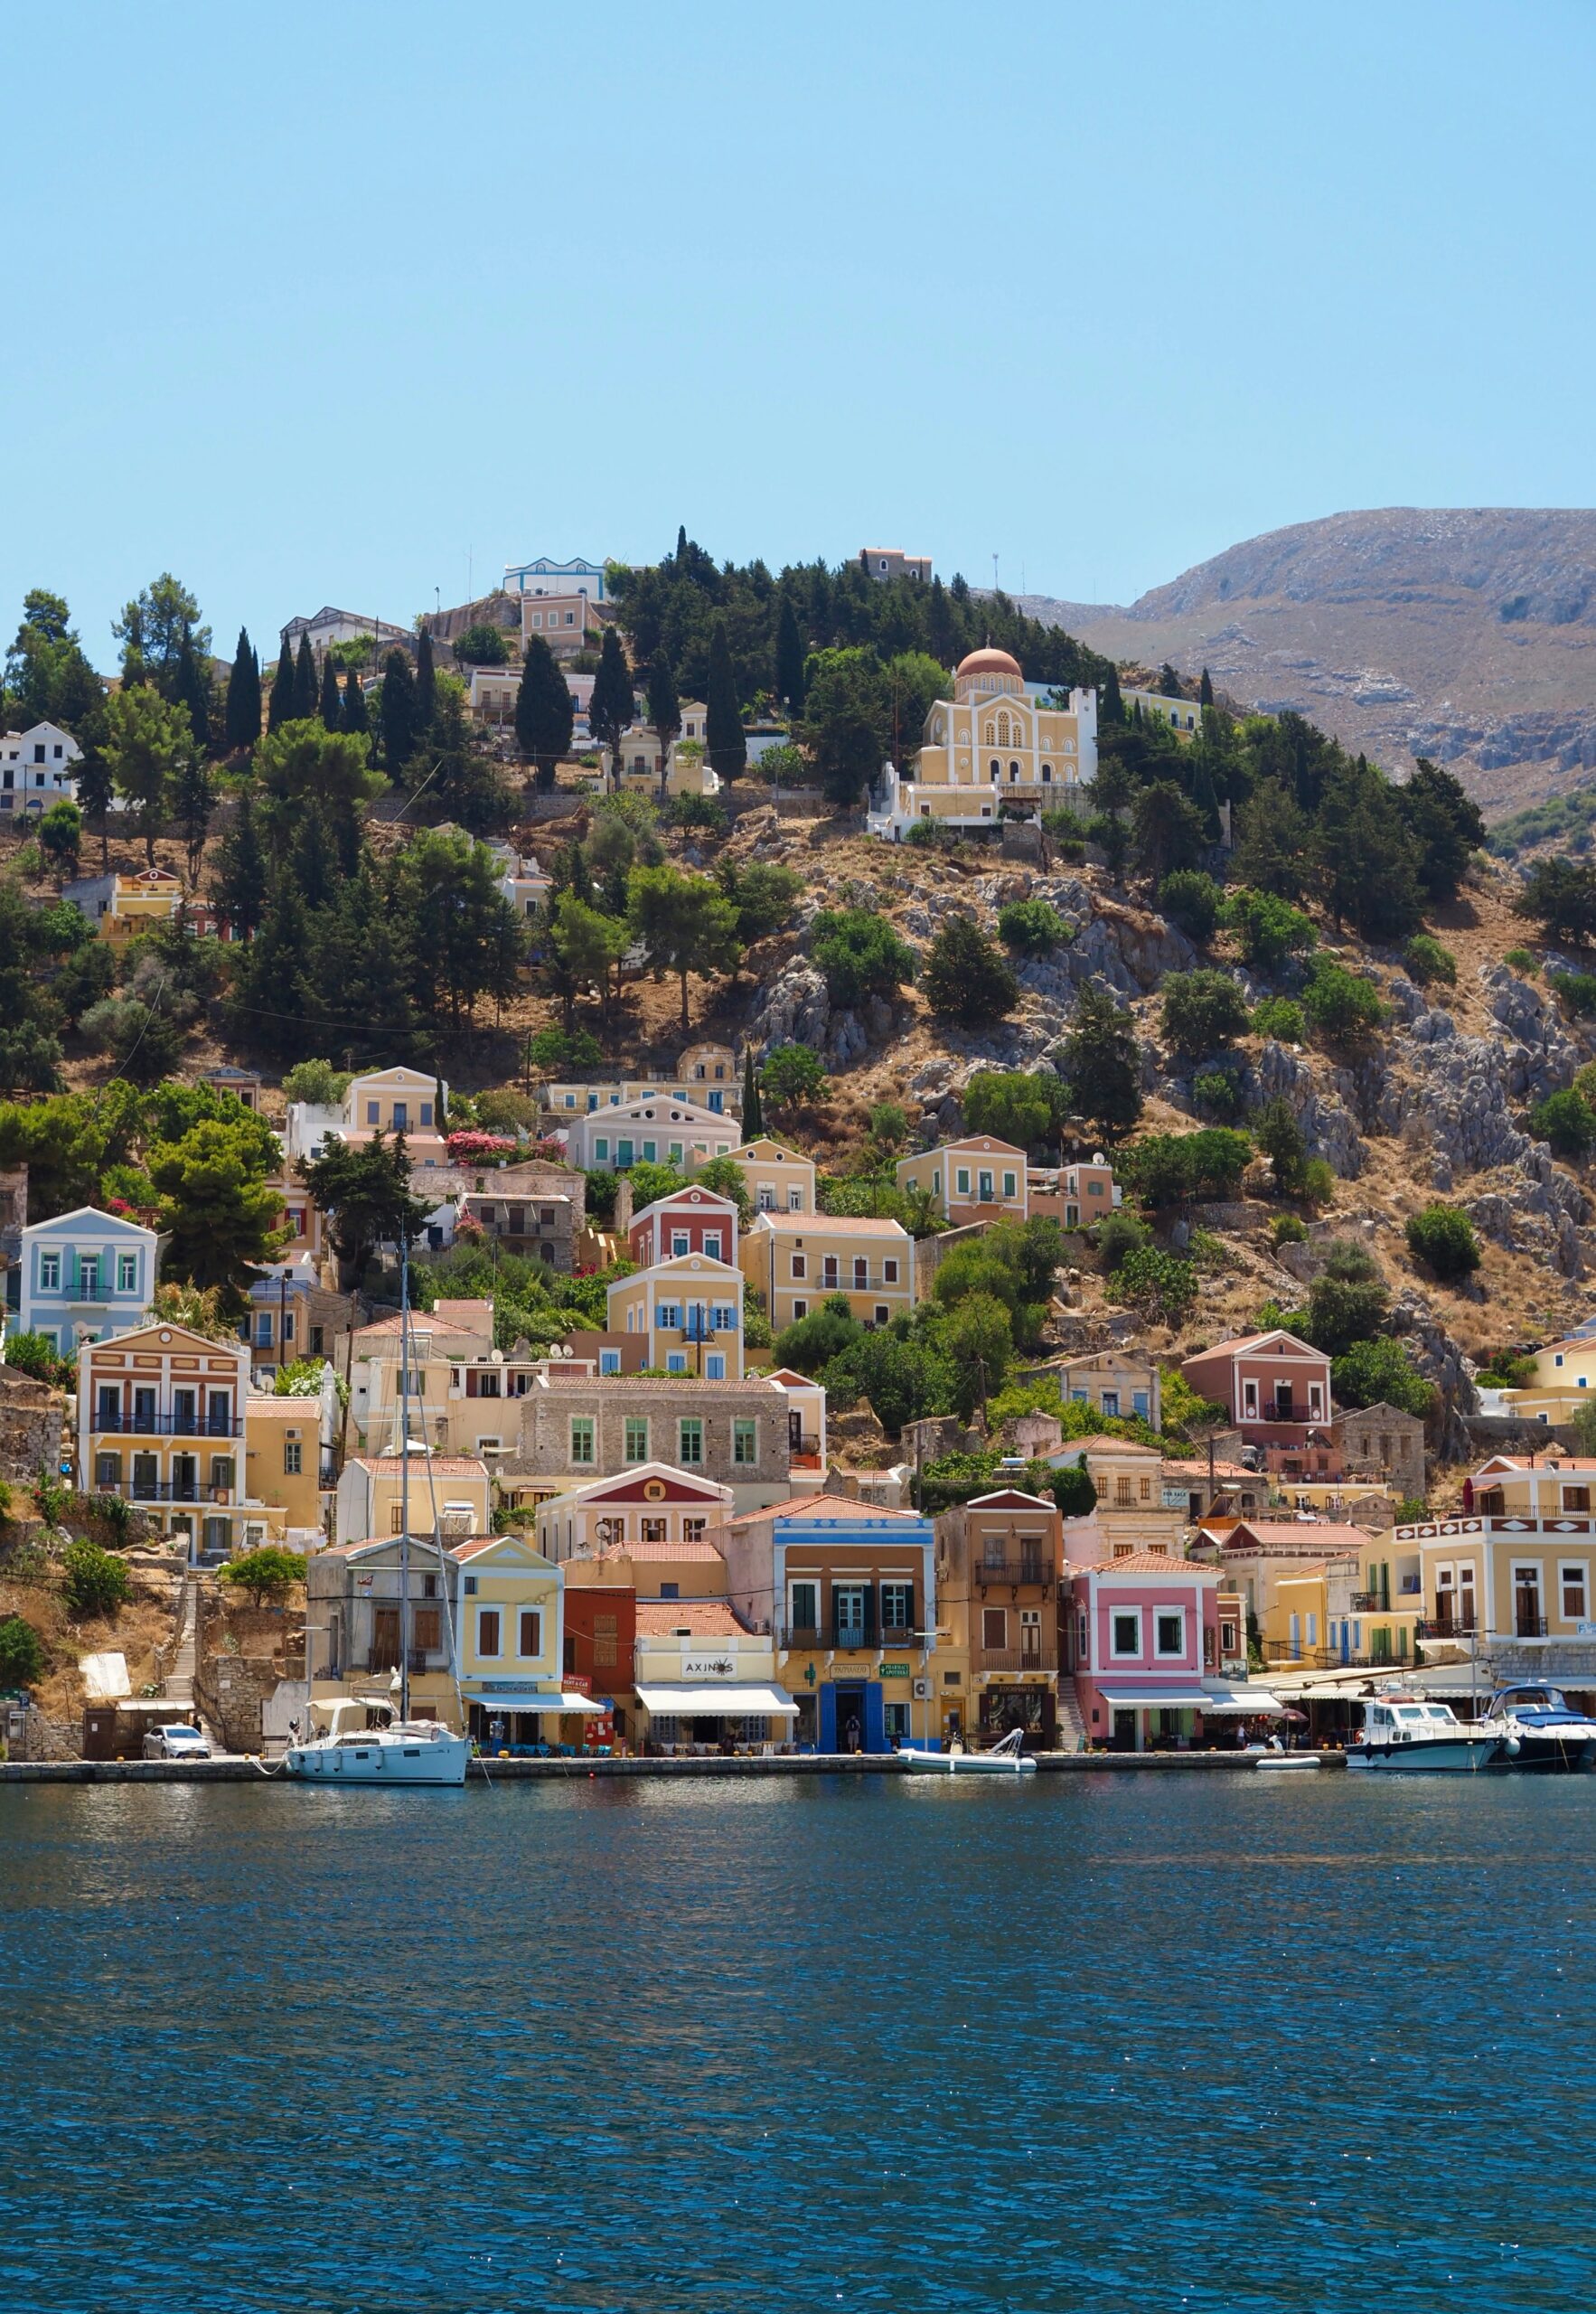 Το απόλυτο success story για τον ελληνικό τουρισμό με ταξιδιωτικές εισπράξεις πάνω από 20 δισ. ευρώ